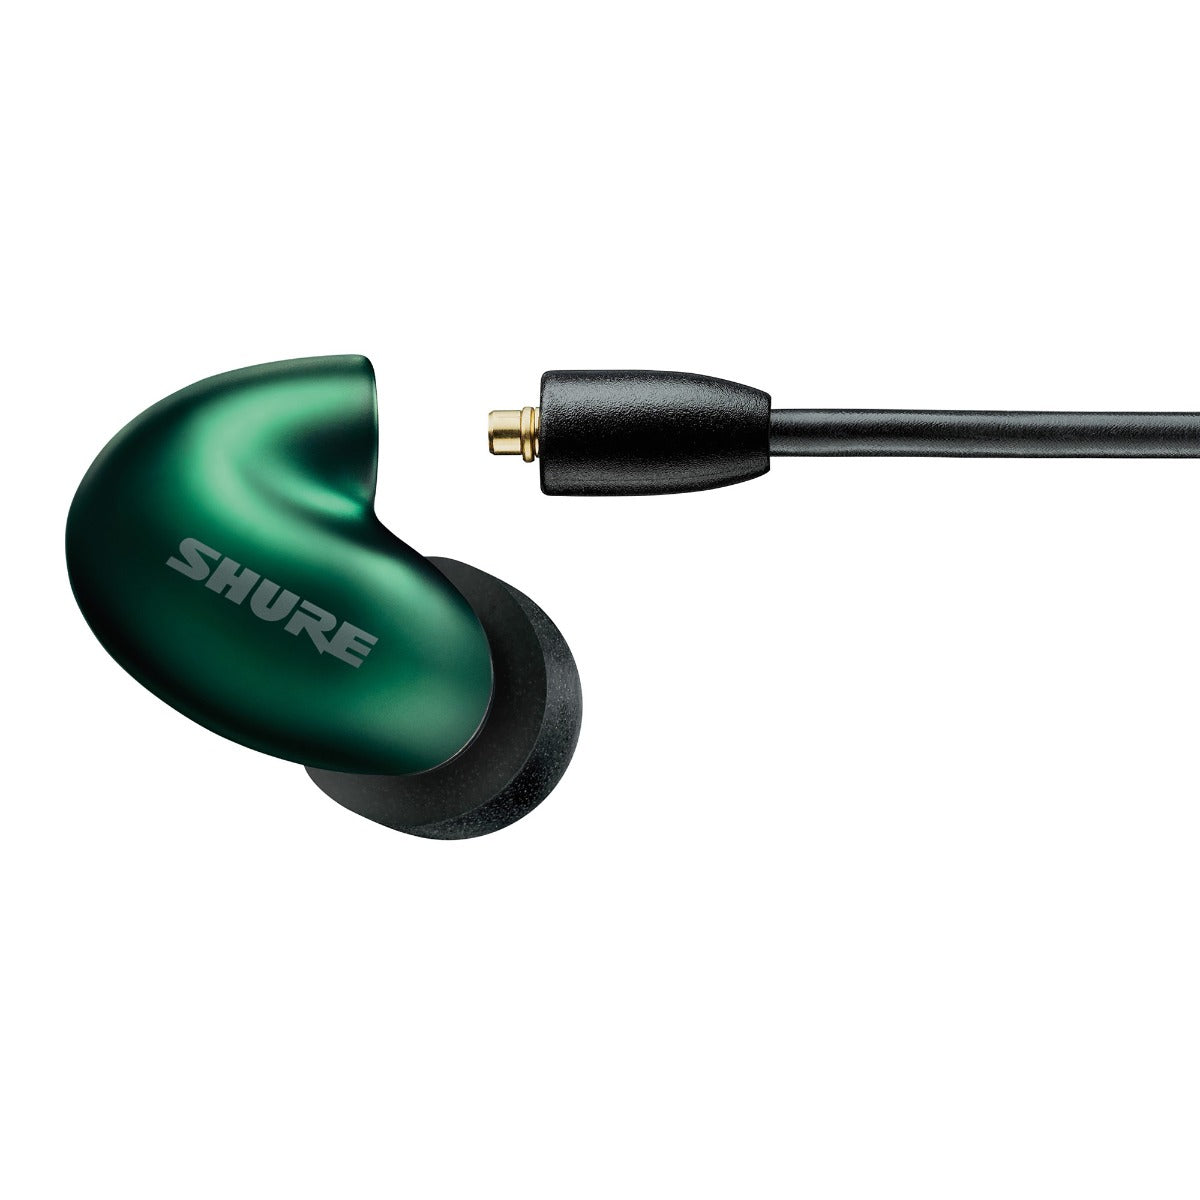 Shure SE846 Pro Gen 2 Sound Isolating Earphones - Jade, View 6